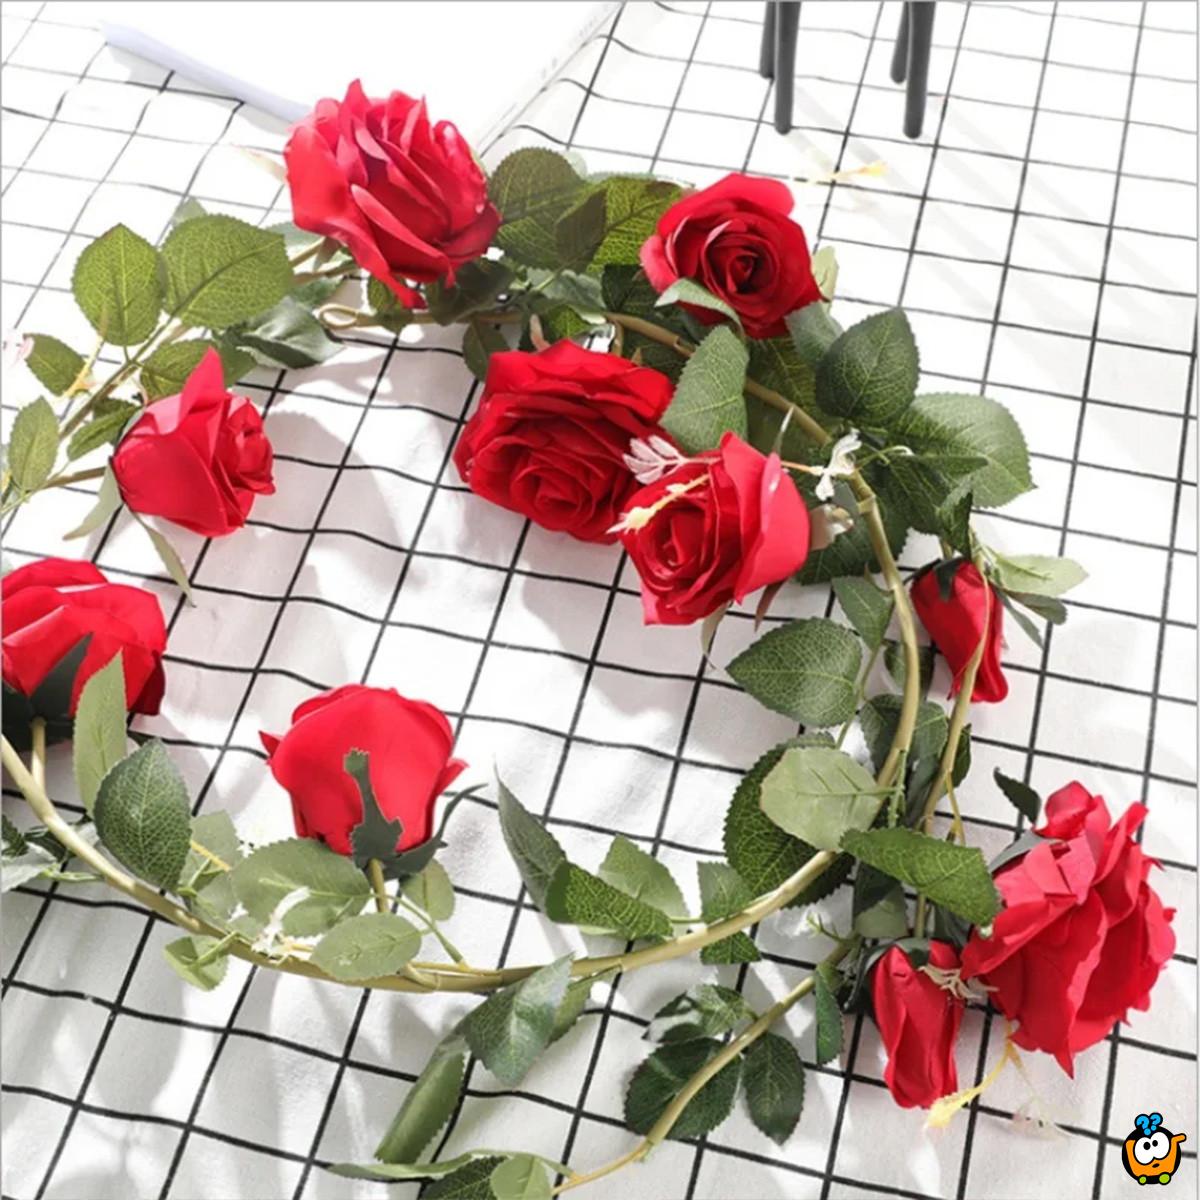 Red Vine Rose - venac veštačkih ruža u crvenoj boji sa zelenilom